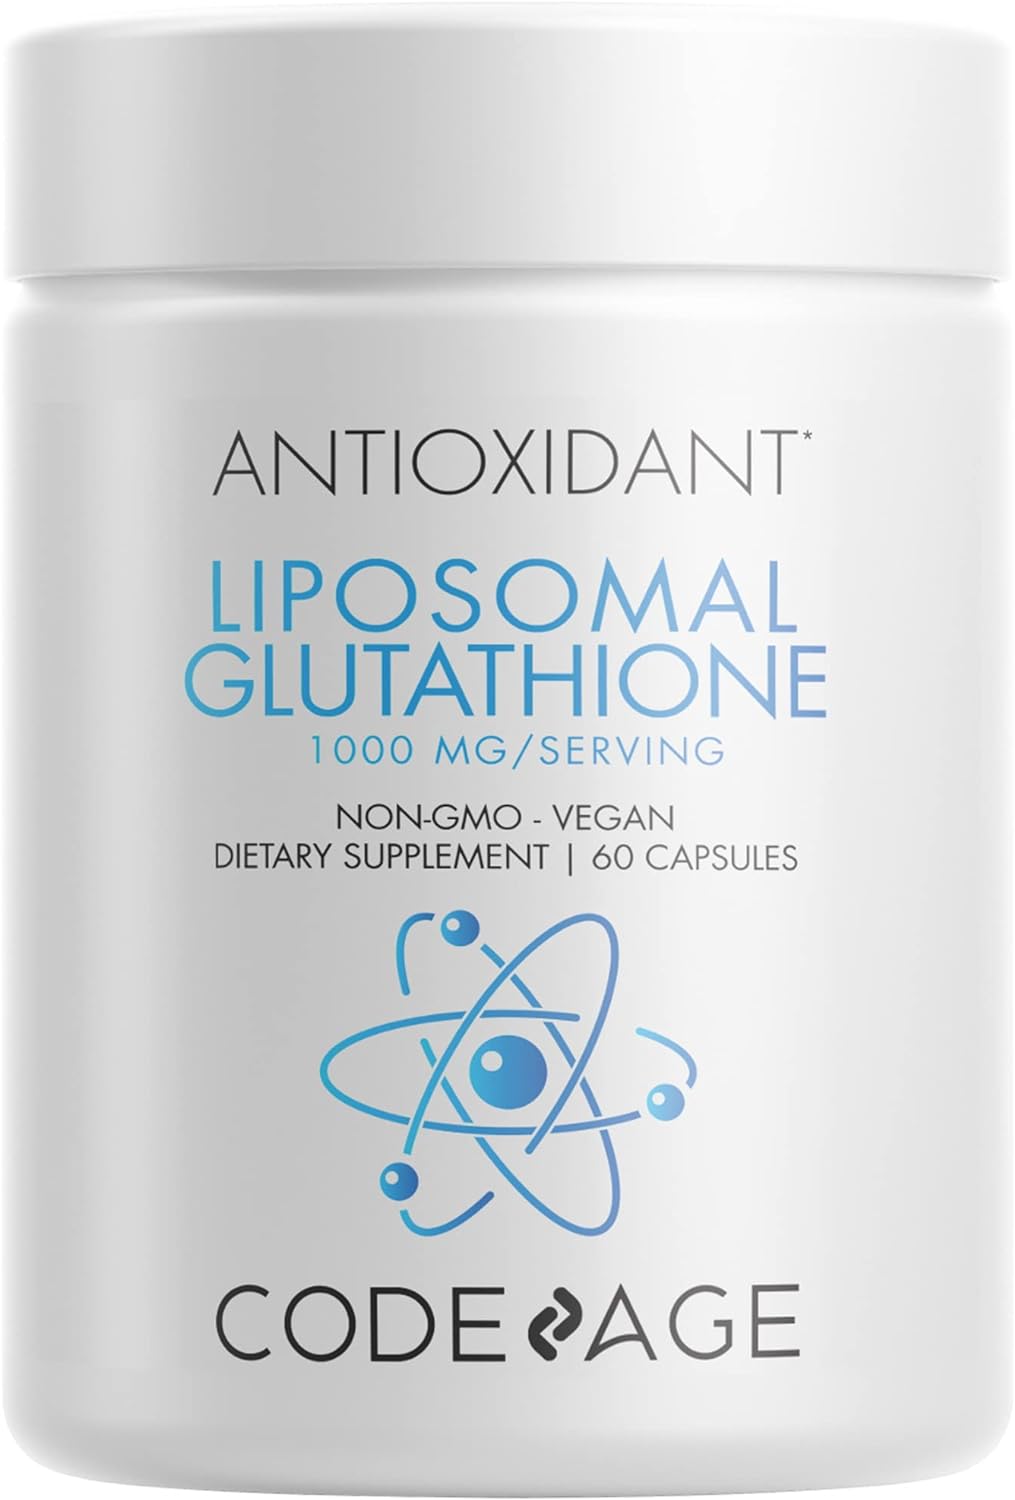 Codeage Liposomal Glutathione 1000 mg, GlutaONE Antioxidant